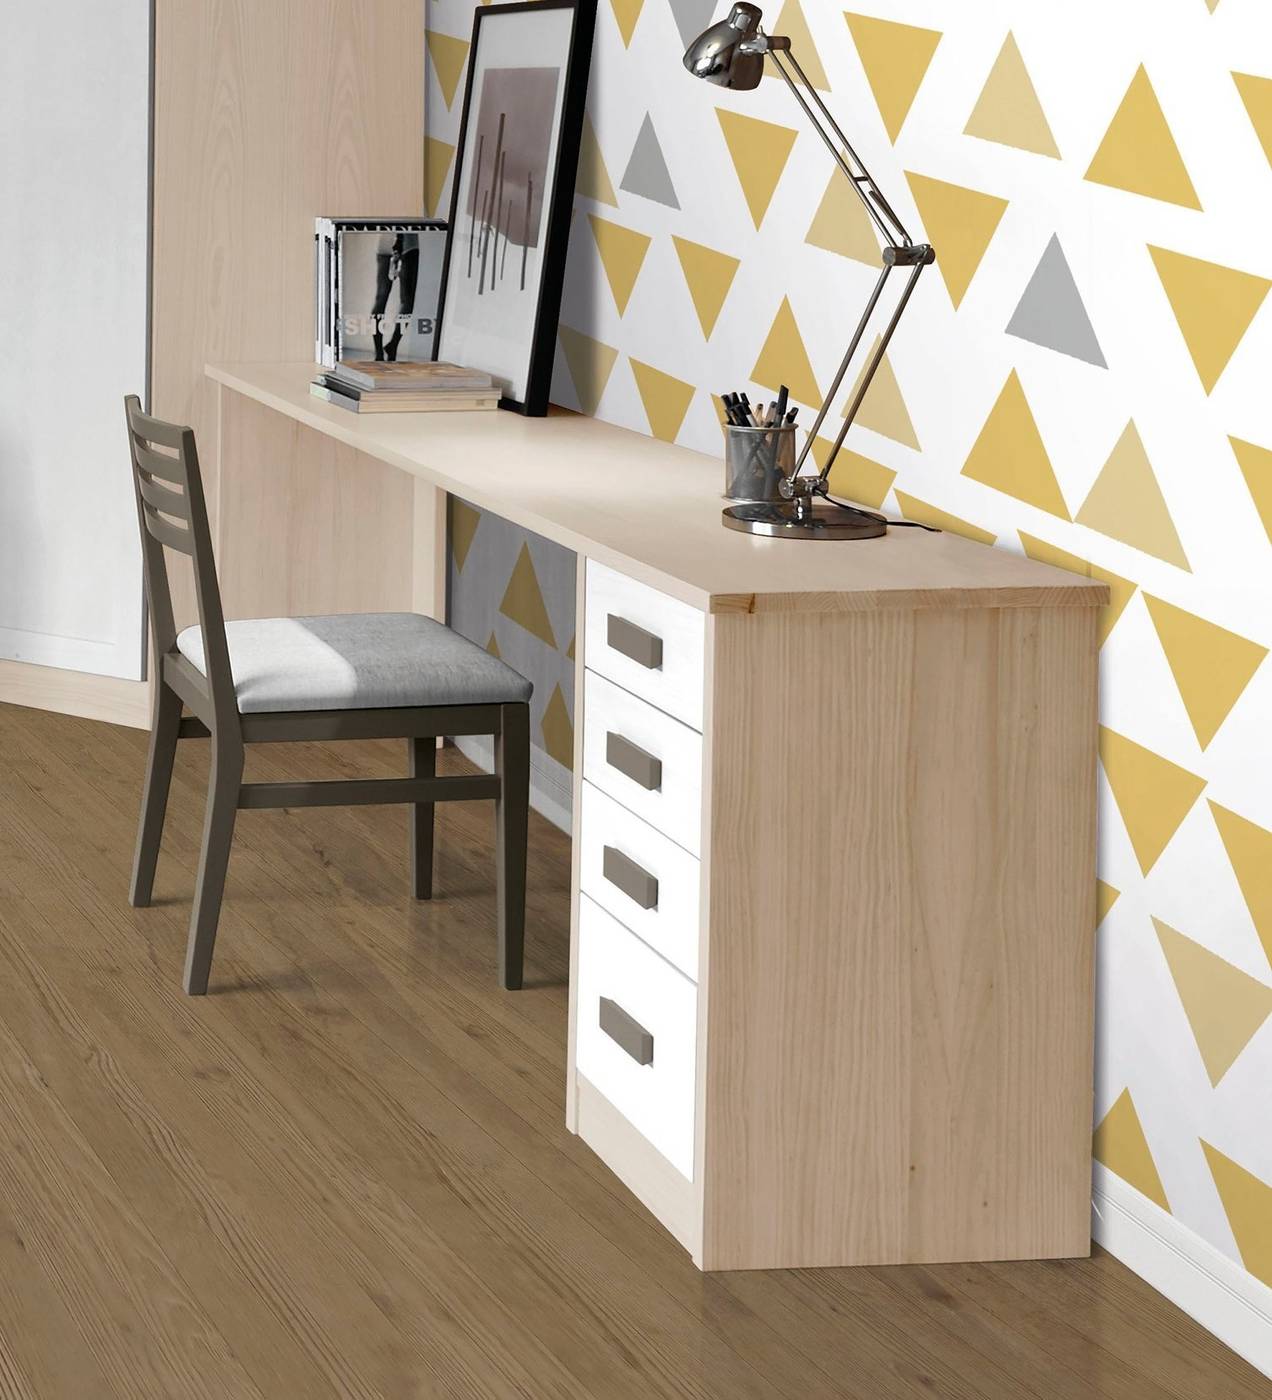 Pata Escritorio Recta - Pata recta rinconera de escritorio de madera maciza. Disponible en una amplia variedad de colores.